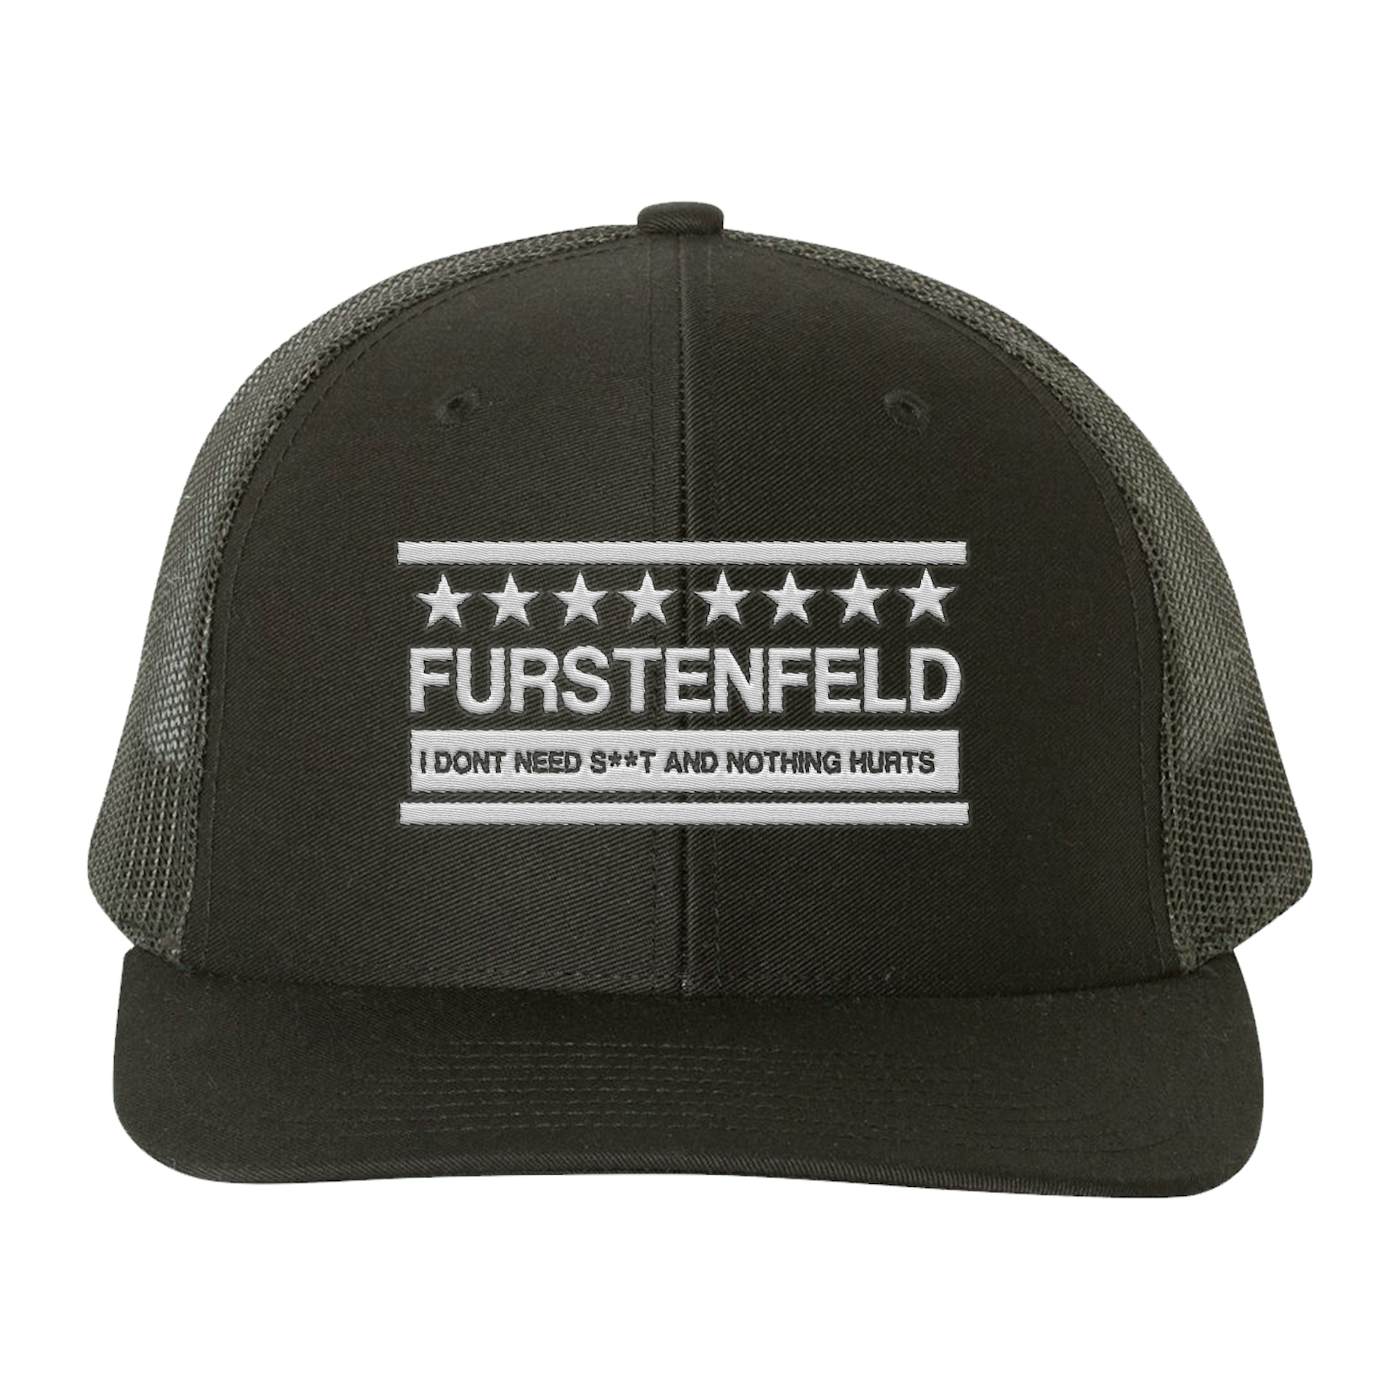 Gunner Black Co Justin Furstenfeld - Furstenfeld Logo Trucker Hat